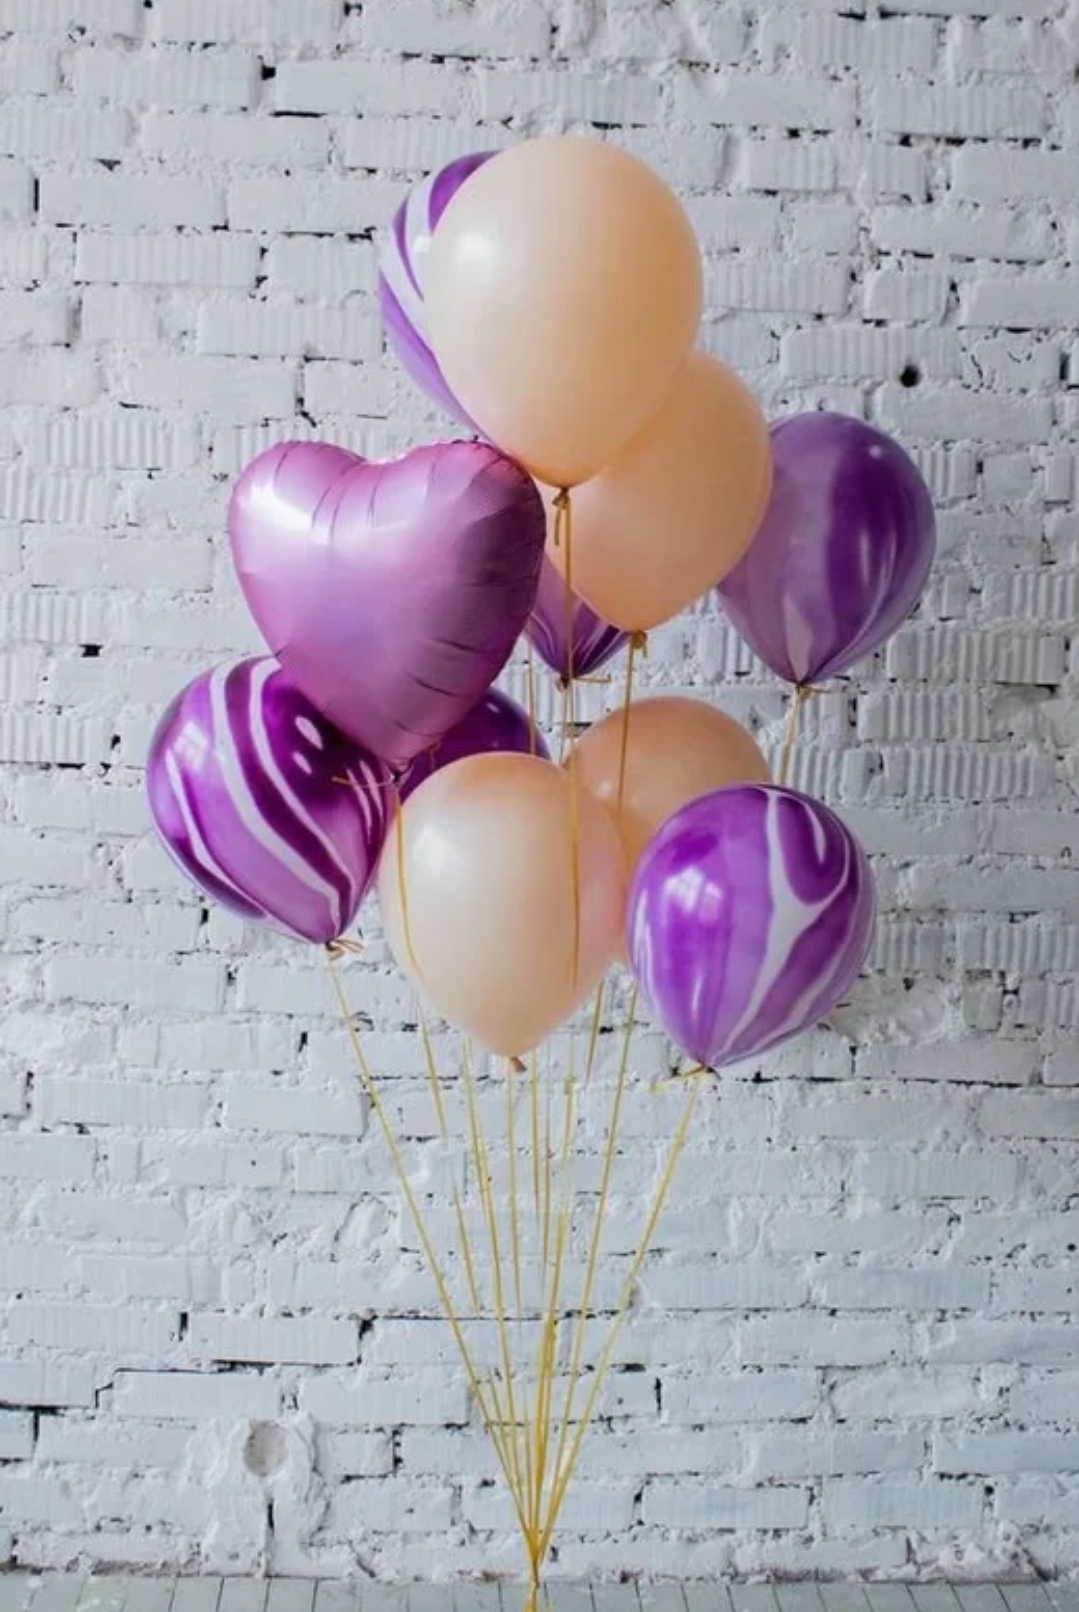 шары надувные на день рождения фото